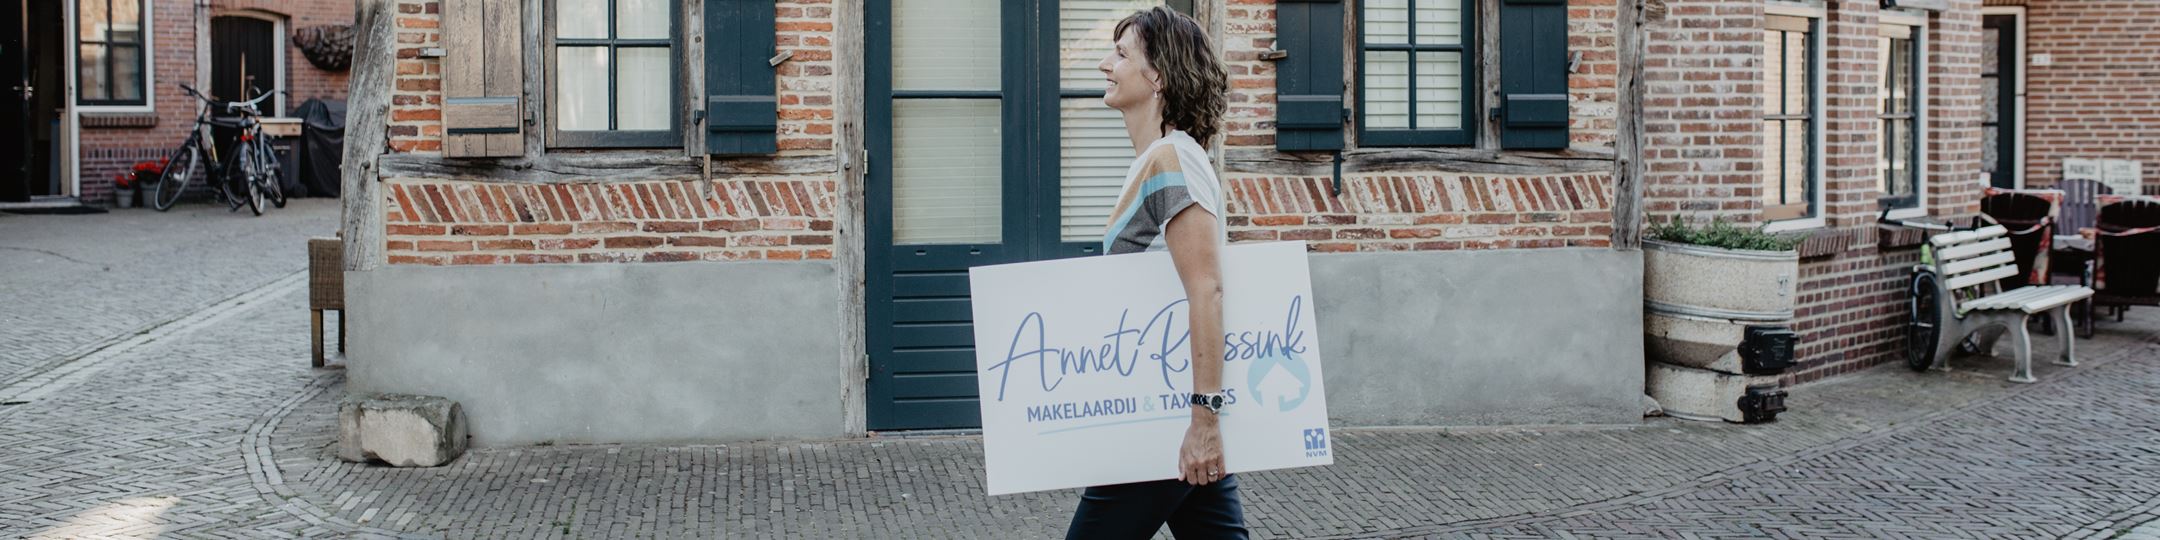 Banner Annet Reessink Makelaardij & Taxaties